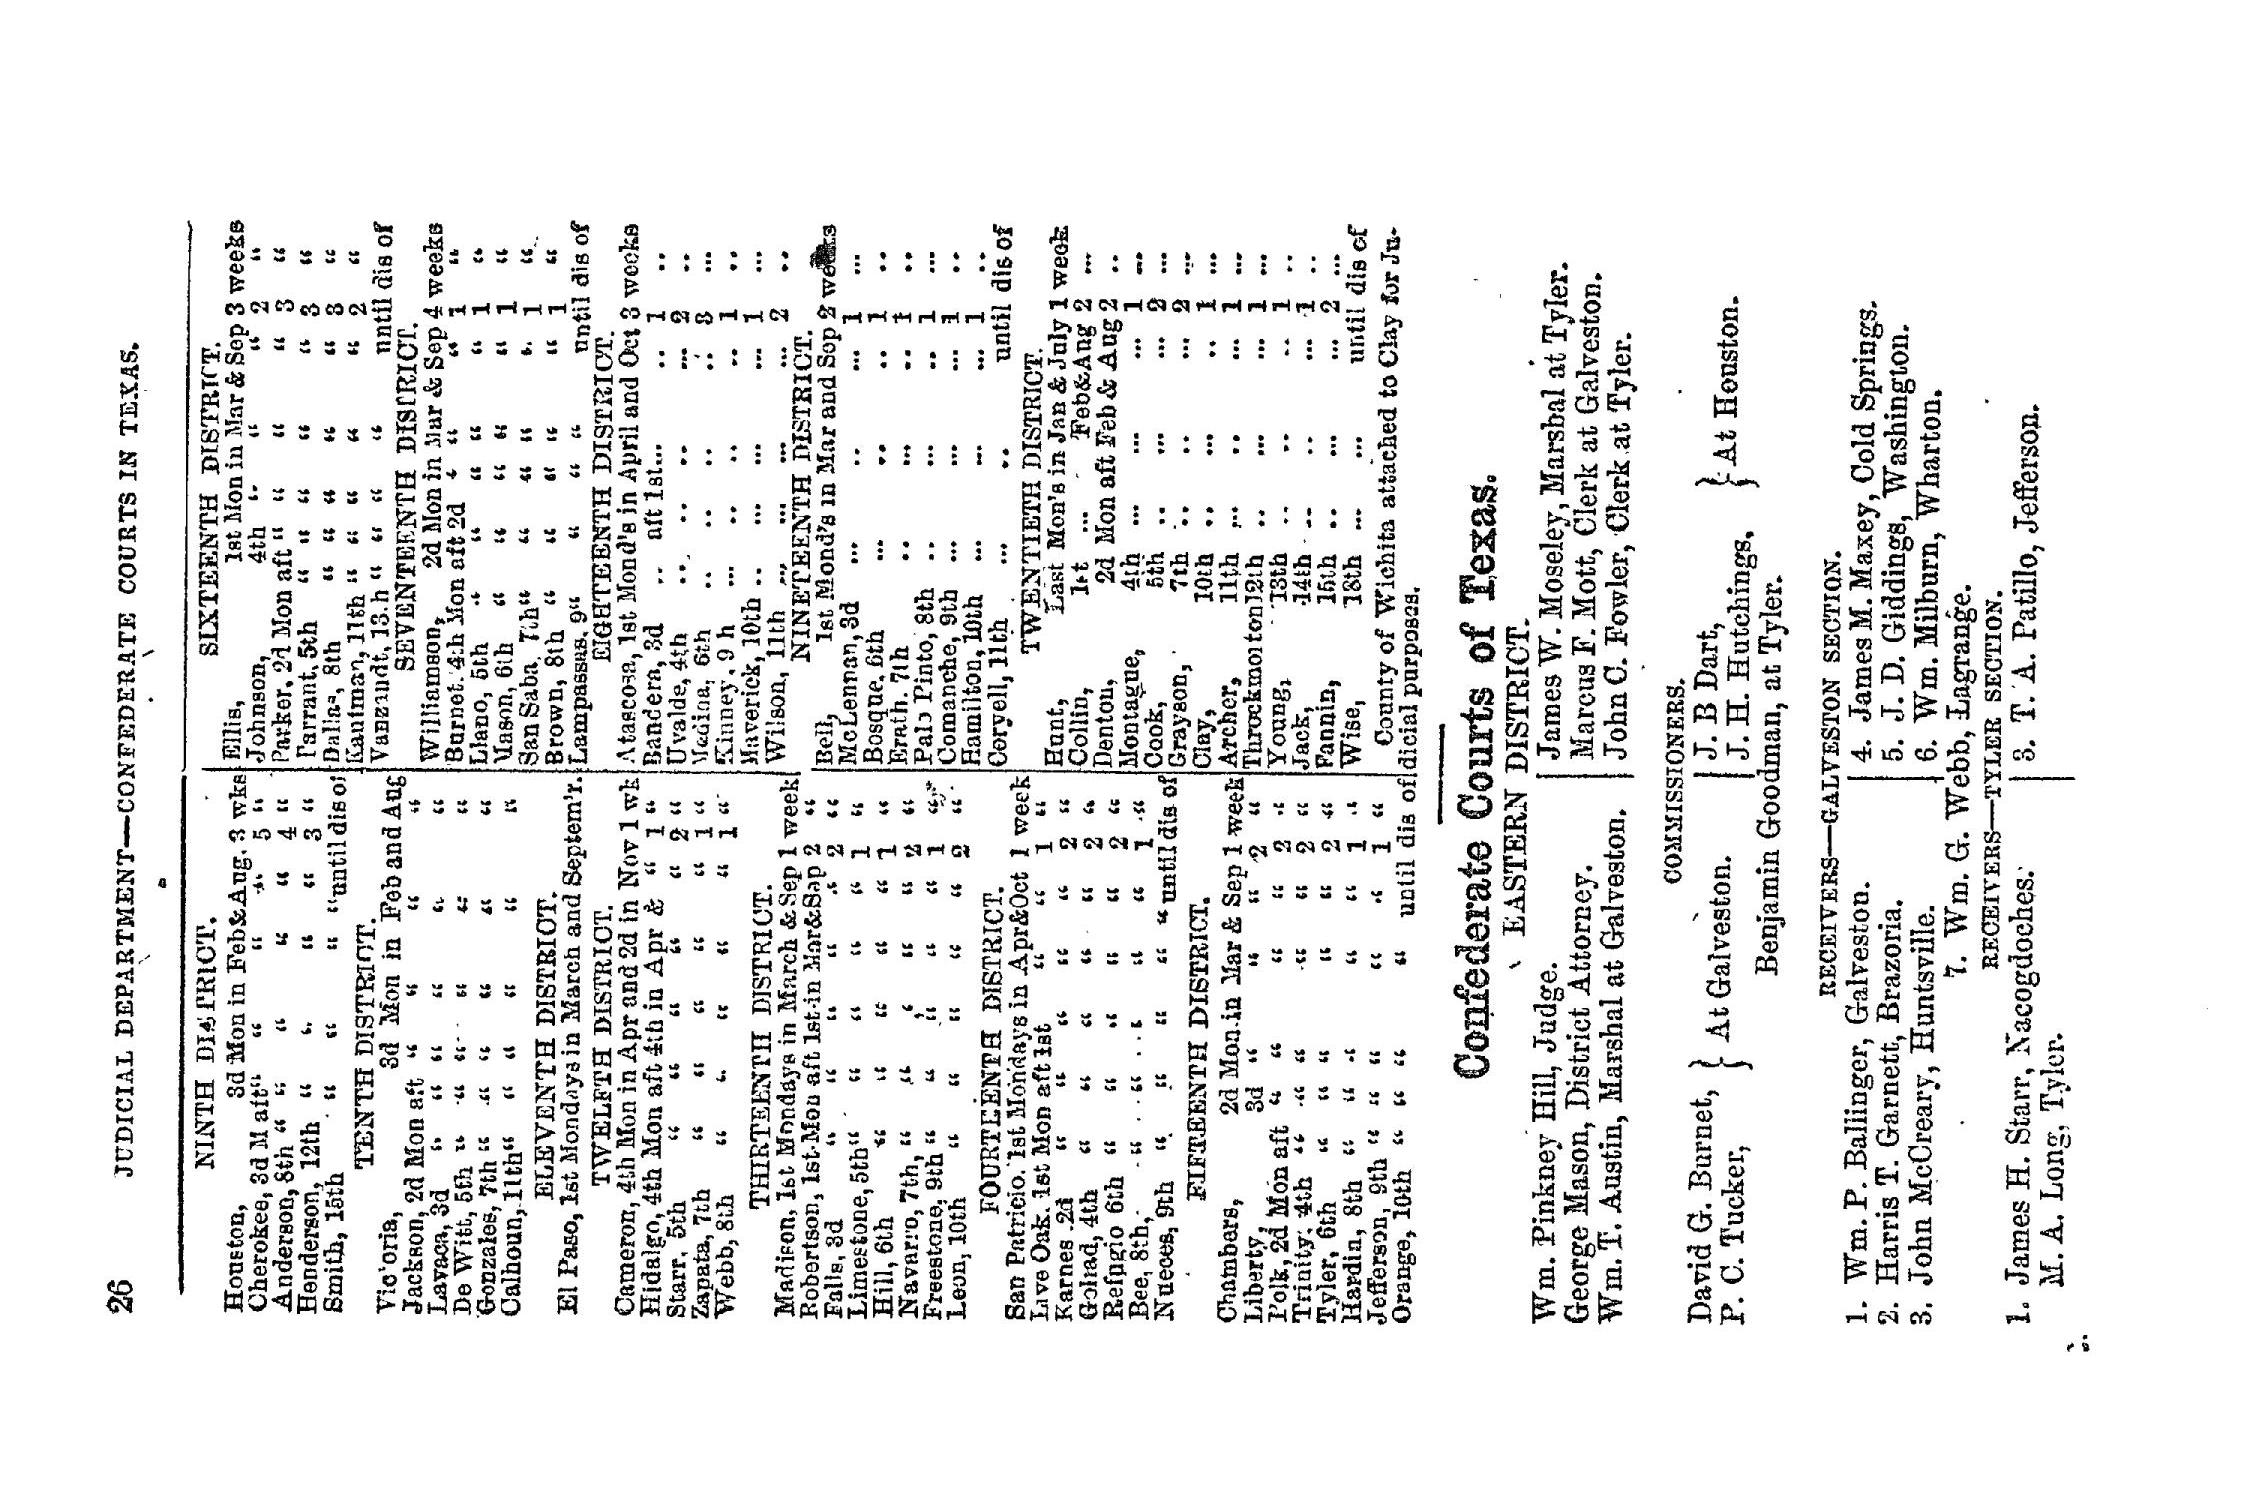 The Texas Almanac for 1864
                                                
                                                    26
                                                